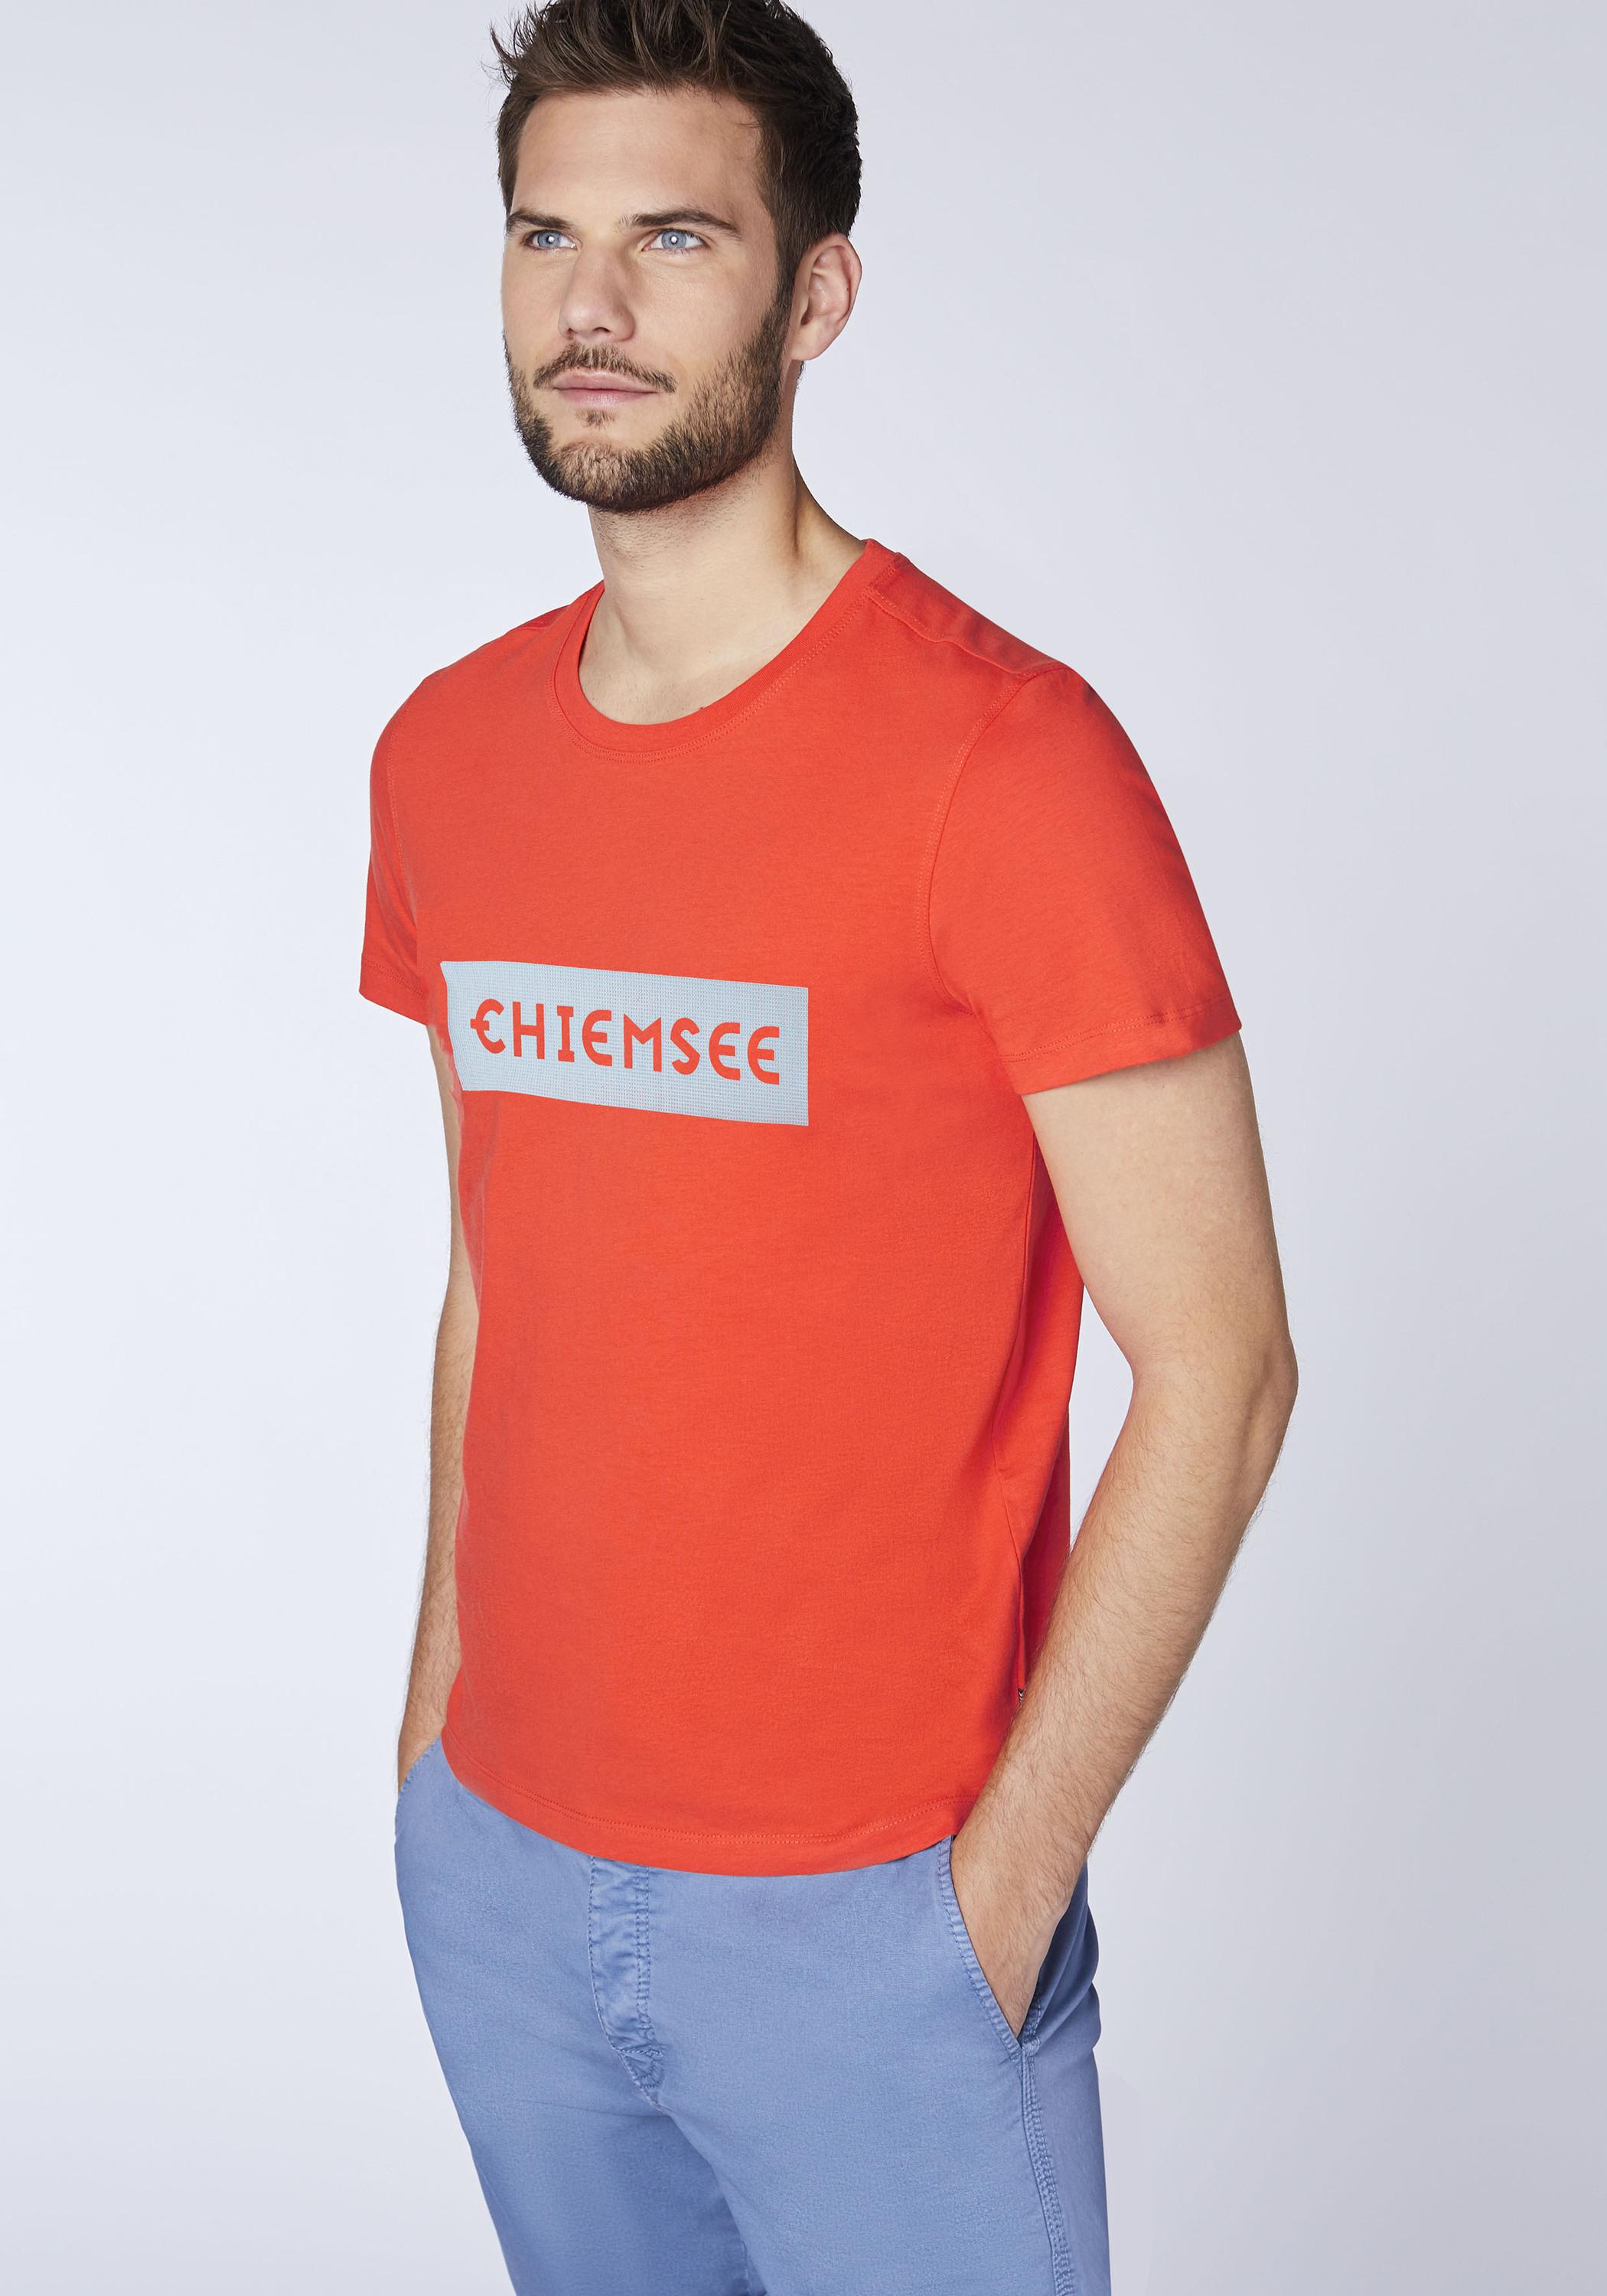 Chiemsee T-Shirt SportScheck von Tomato Online im Chery Herren T-Shirt kaufen Shop